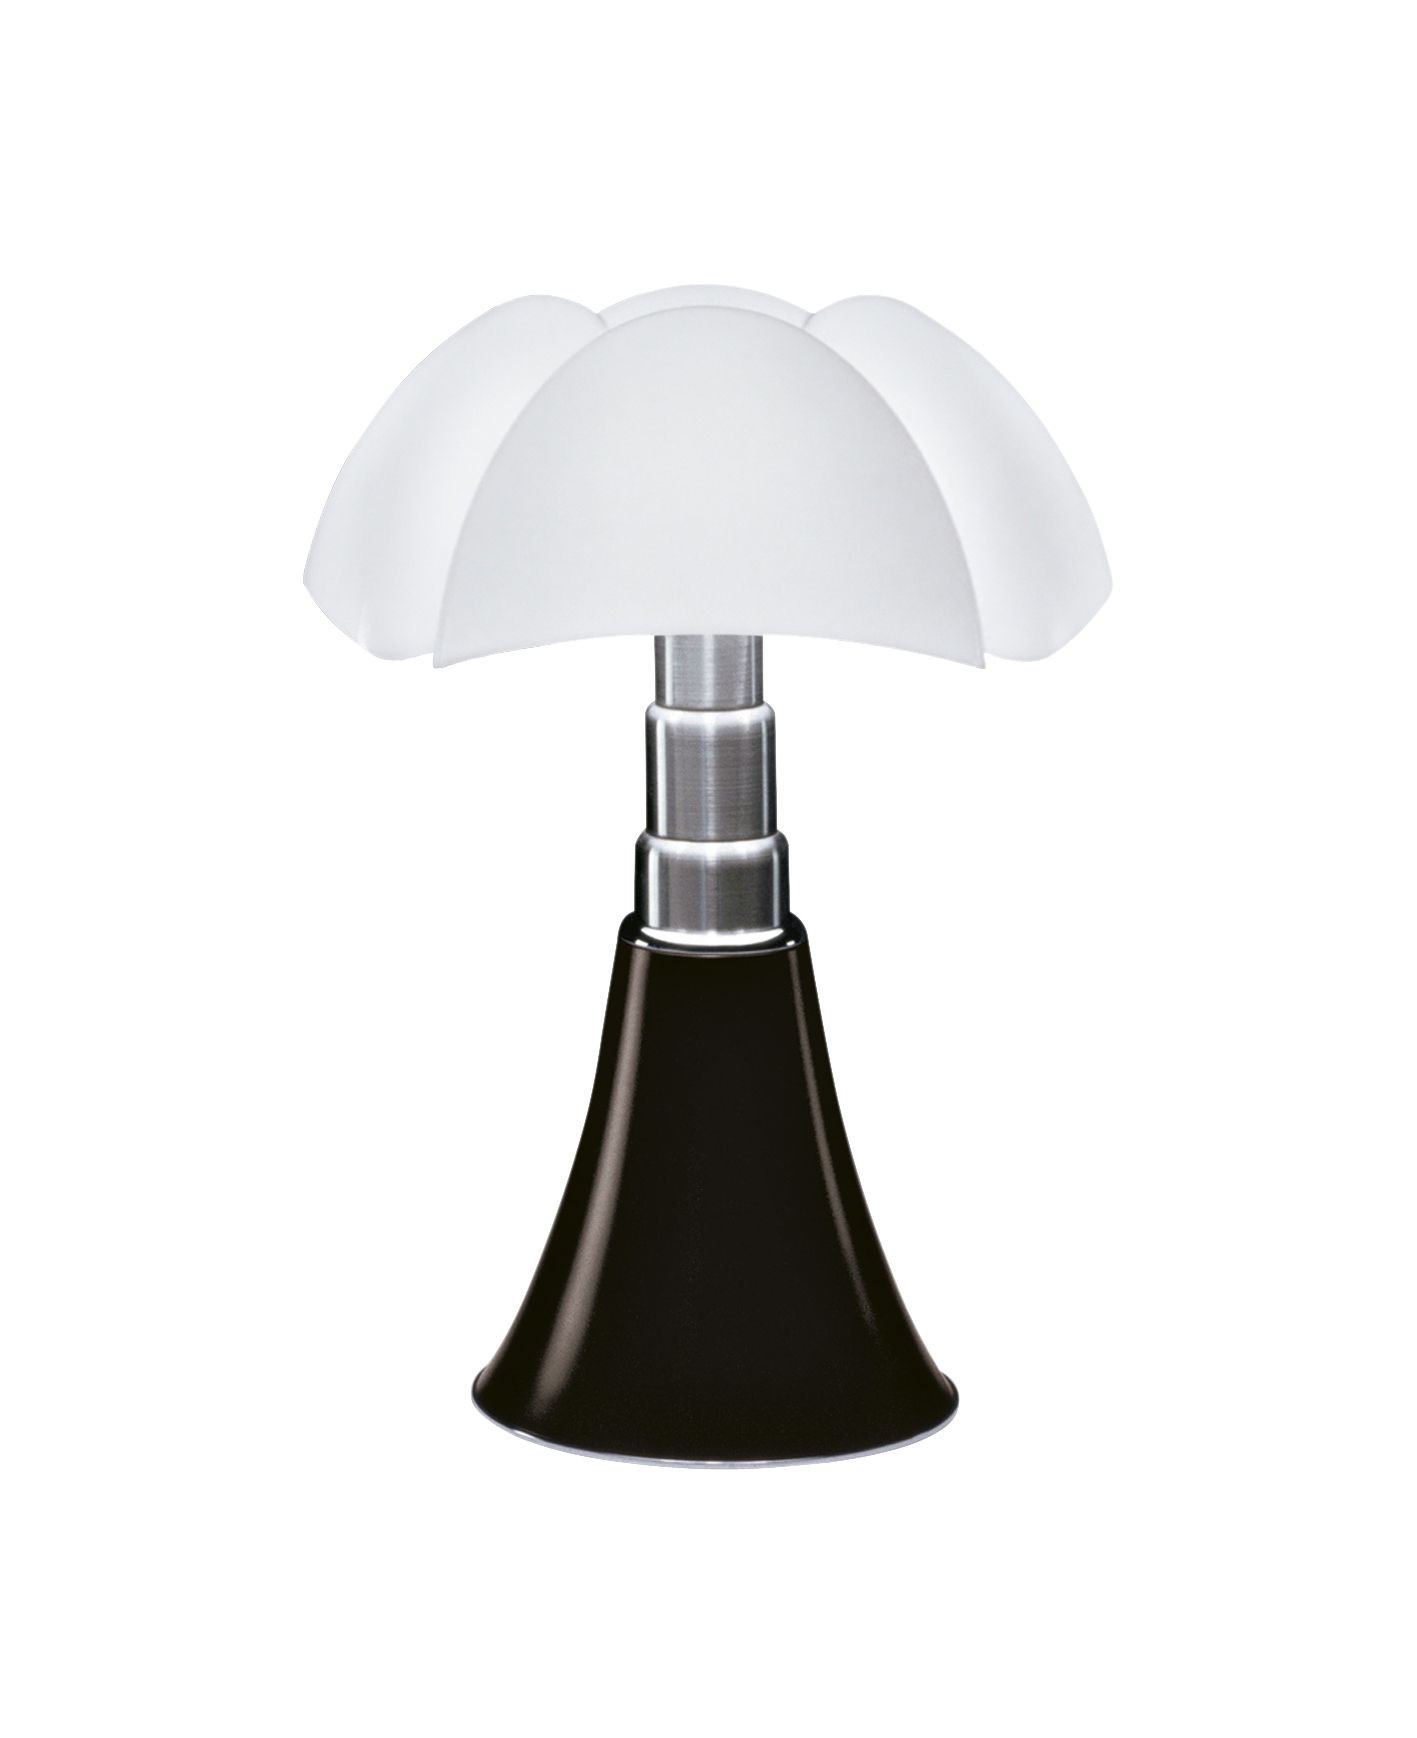 Lampe De
 Lampe de table Minipipistrello LED H 35 cm Marron foncé